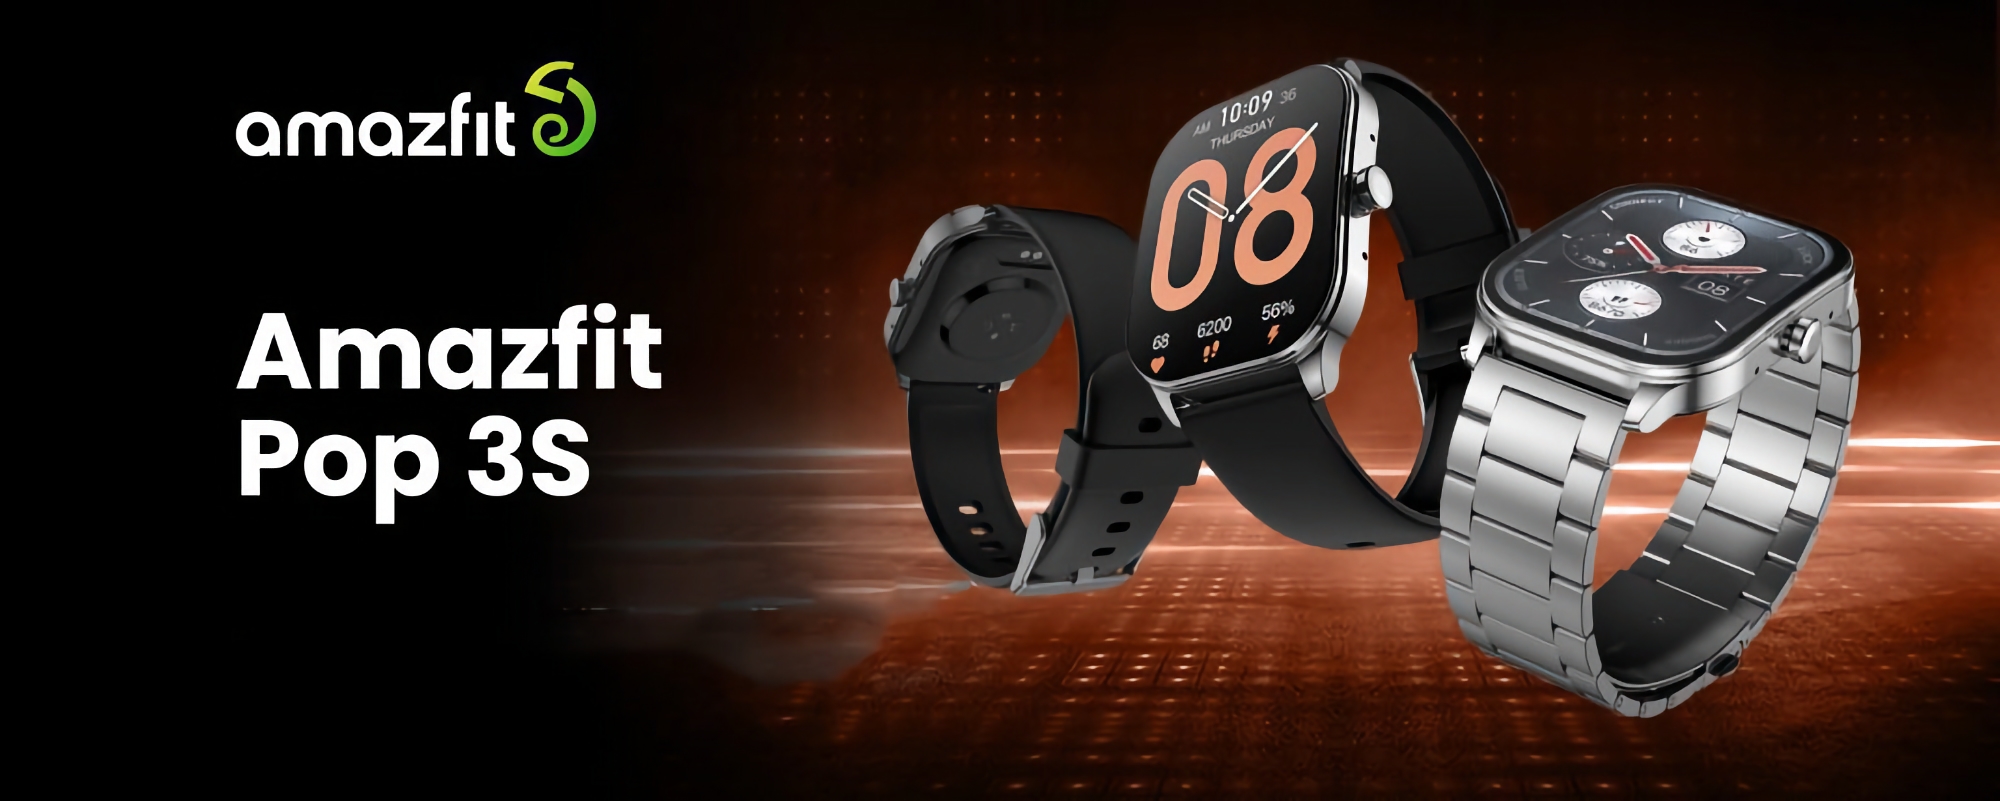 Amazfit wprowadza na rynek smartwatch Pop 3S z ekranem AMOLED, czujnikiem SpO2 i do 12 dni pracy na baterii